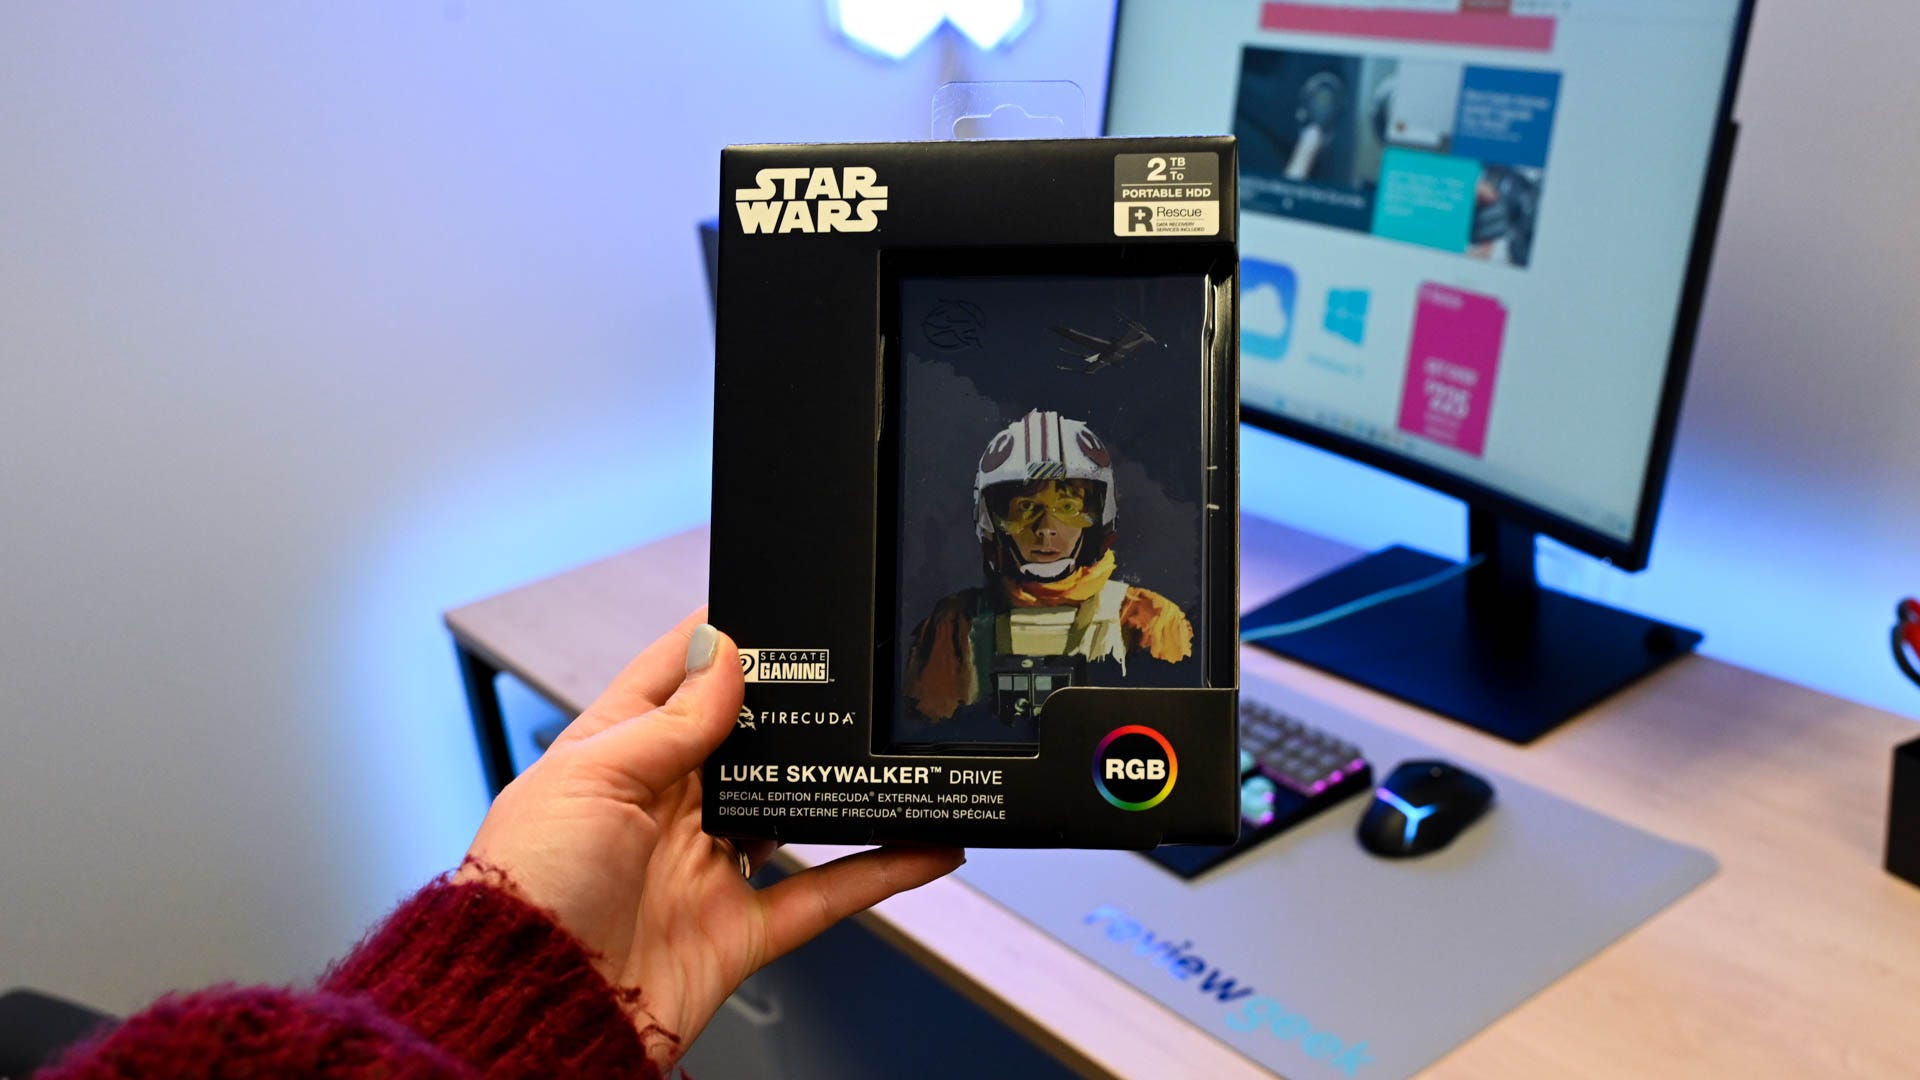 Seagate Luke Skywalker External Hard Drive in its packaging with Skywalker portrait